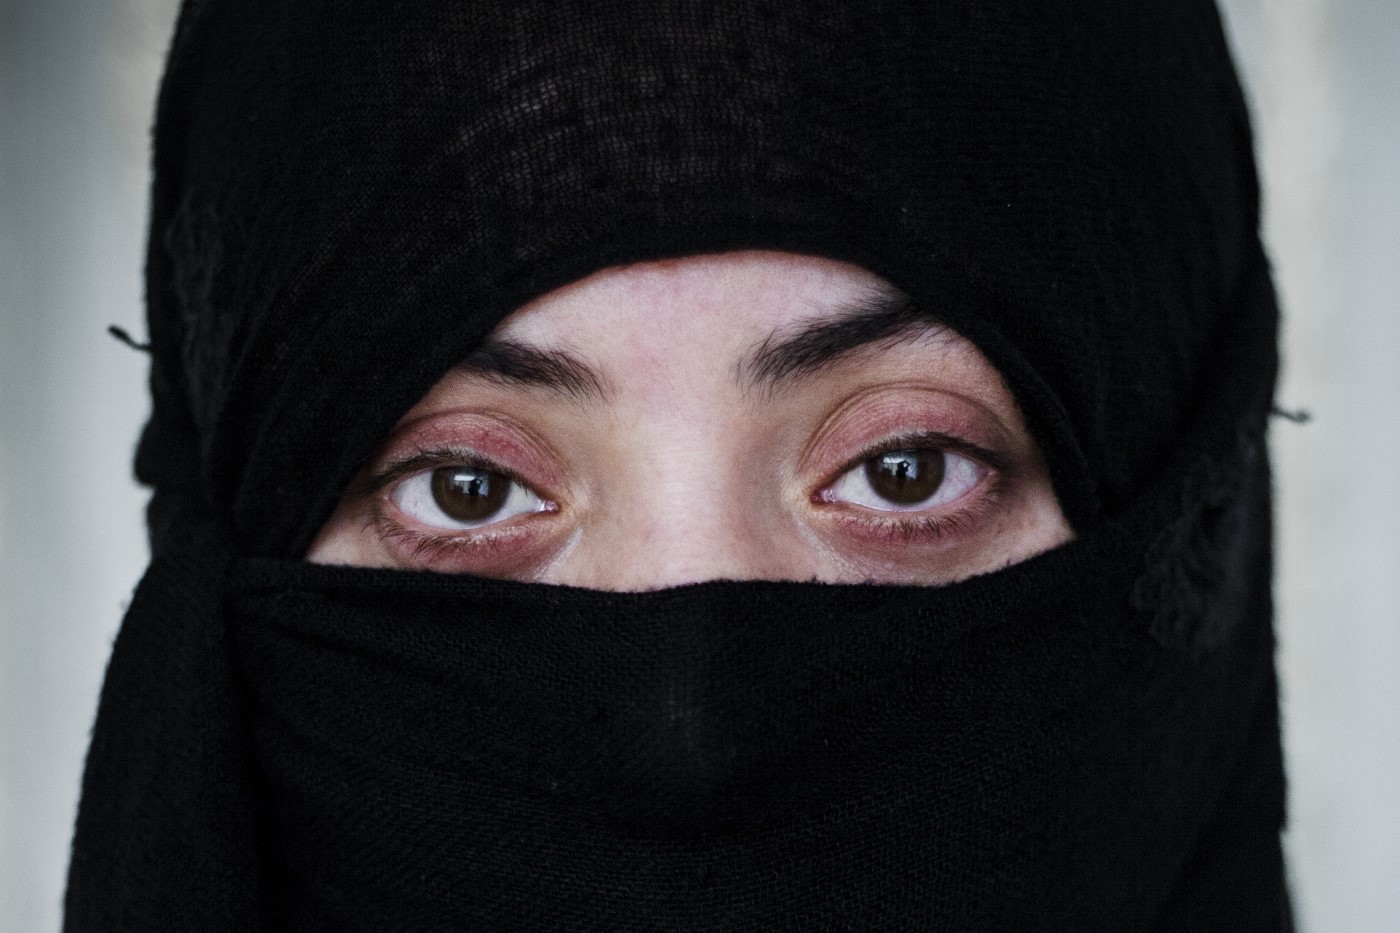 Rwayda Elias K. (26). Mujer Yazidí. Secuestrada con toda su familia por el ISIS en Shangal en 2014. Fue esclava con su hijo de 6 meses de un primer hombre en Mosul. Durante su cautiverio, que duró un mes, estuvo encerrada bajo llave en una habitación. Elias estuvo bajo control del ISIS 2 años. Fue vendida un total de cuatro veces y violada por muchos más miembros del Daesh. El último hombre la compró en Raqqa. Estuvo 11 meses hasta que el primer ministro del Kurdistán pagó 30.000 dólares de rescate. Ahora se refugia en Duhok (2017) desde hace un año y tres meses. No sabe nada de su familia. No recibe atención psicológica, puesto que no tiene dinero para pagarla. Textualmente dice "el Daesh ha matado mi vida". Duhok, Kurdistán, Irak. 4 de julio de 2017